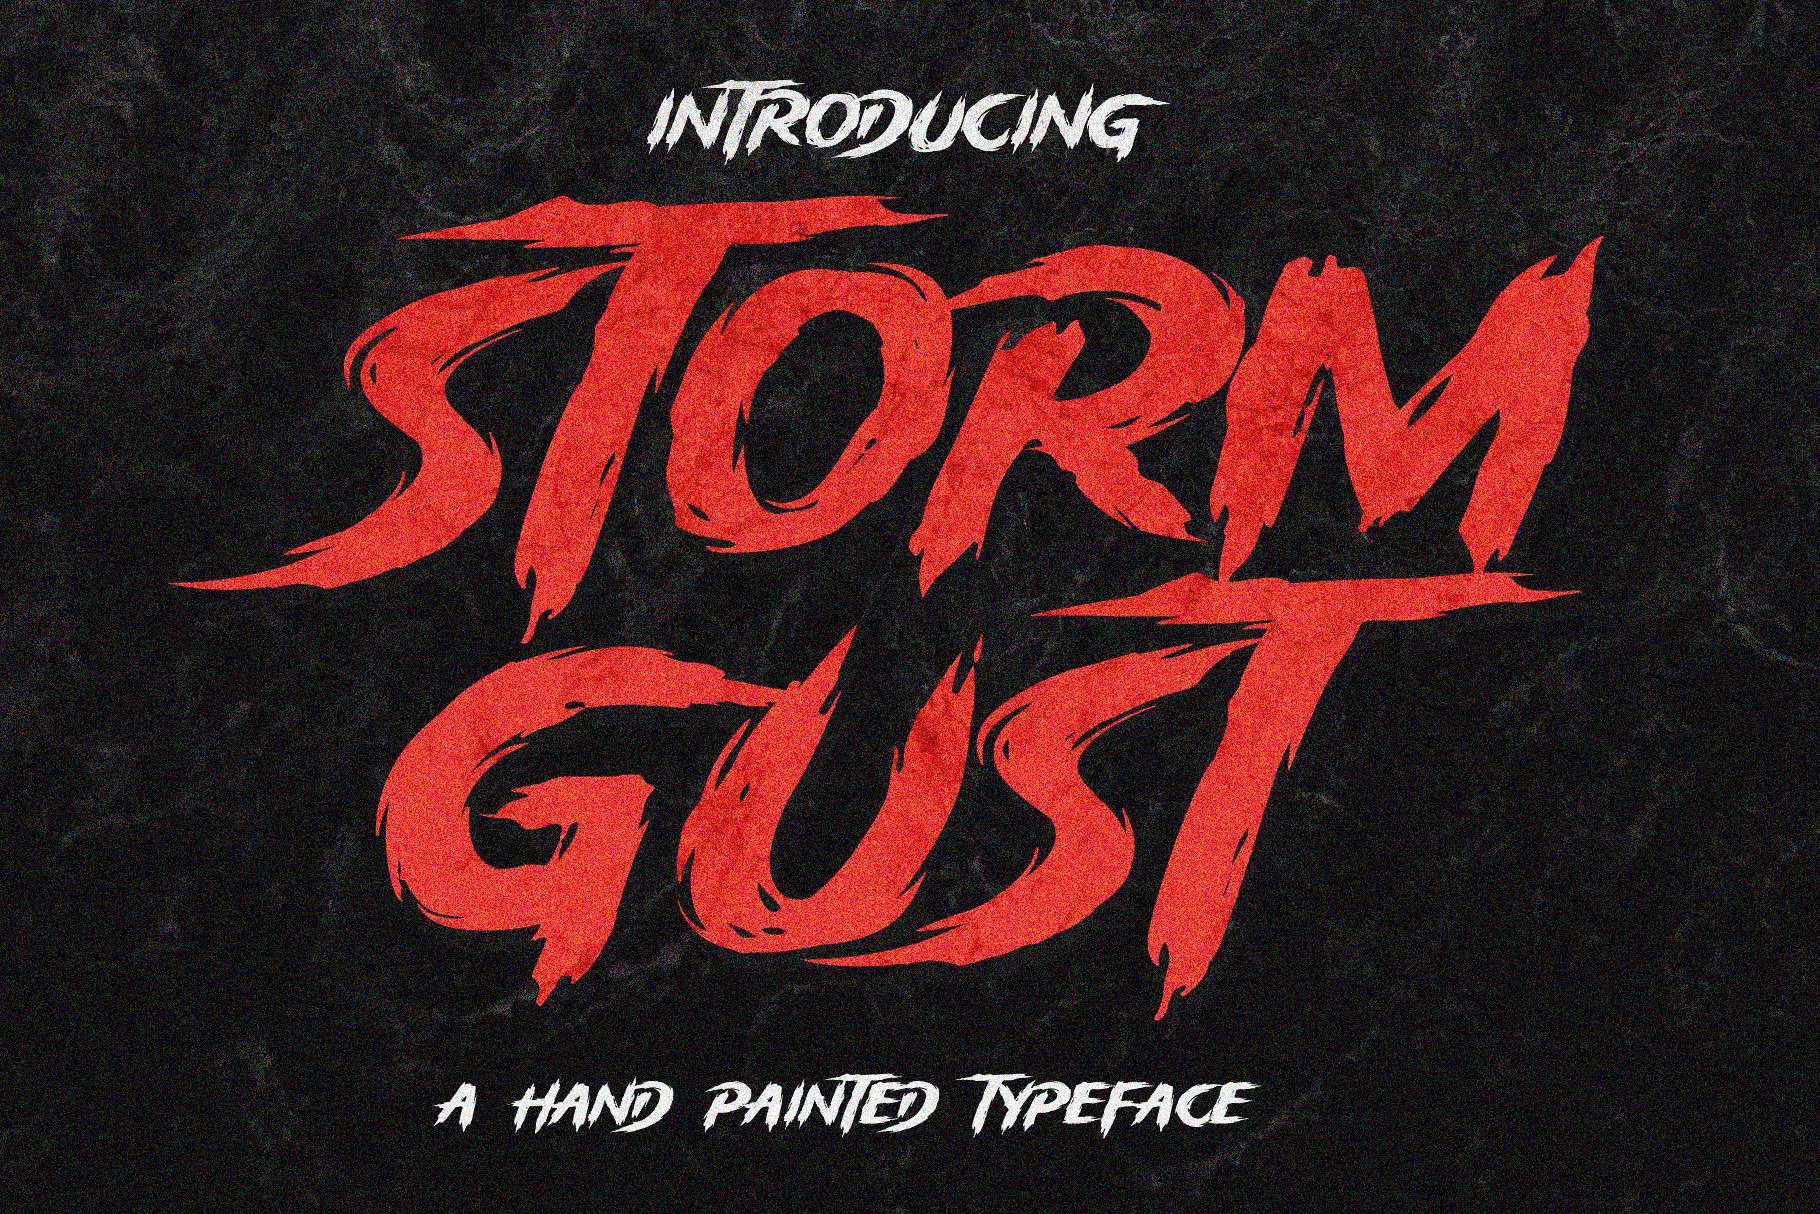 Storm Gust Font